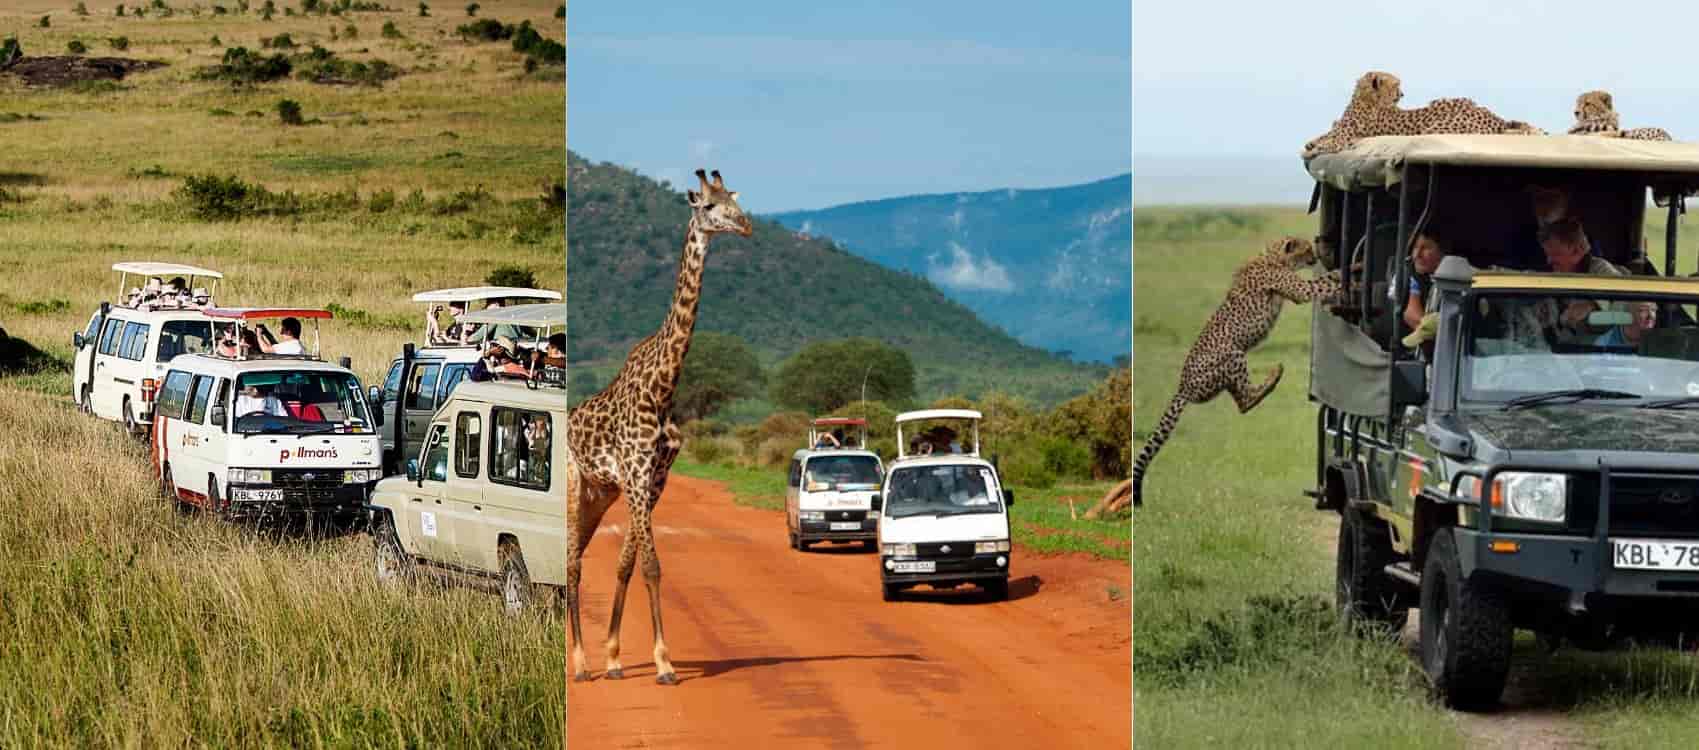 travel agencies in Kenya